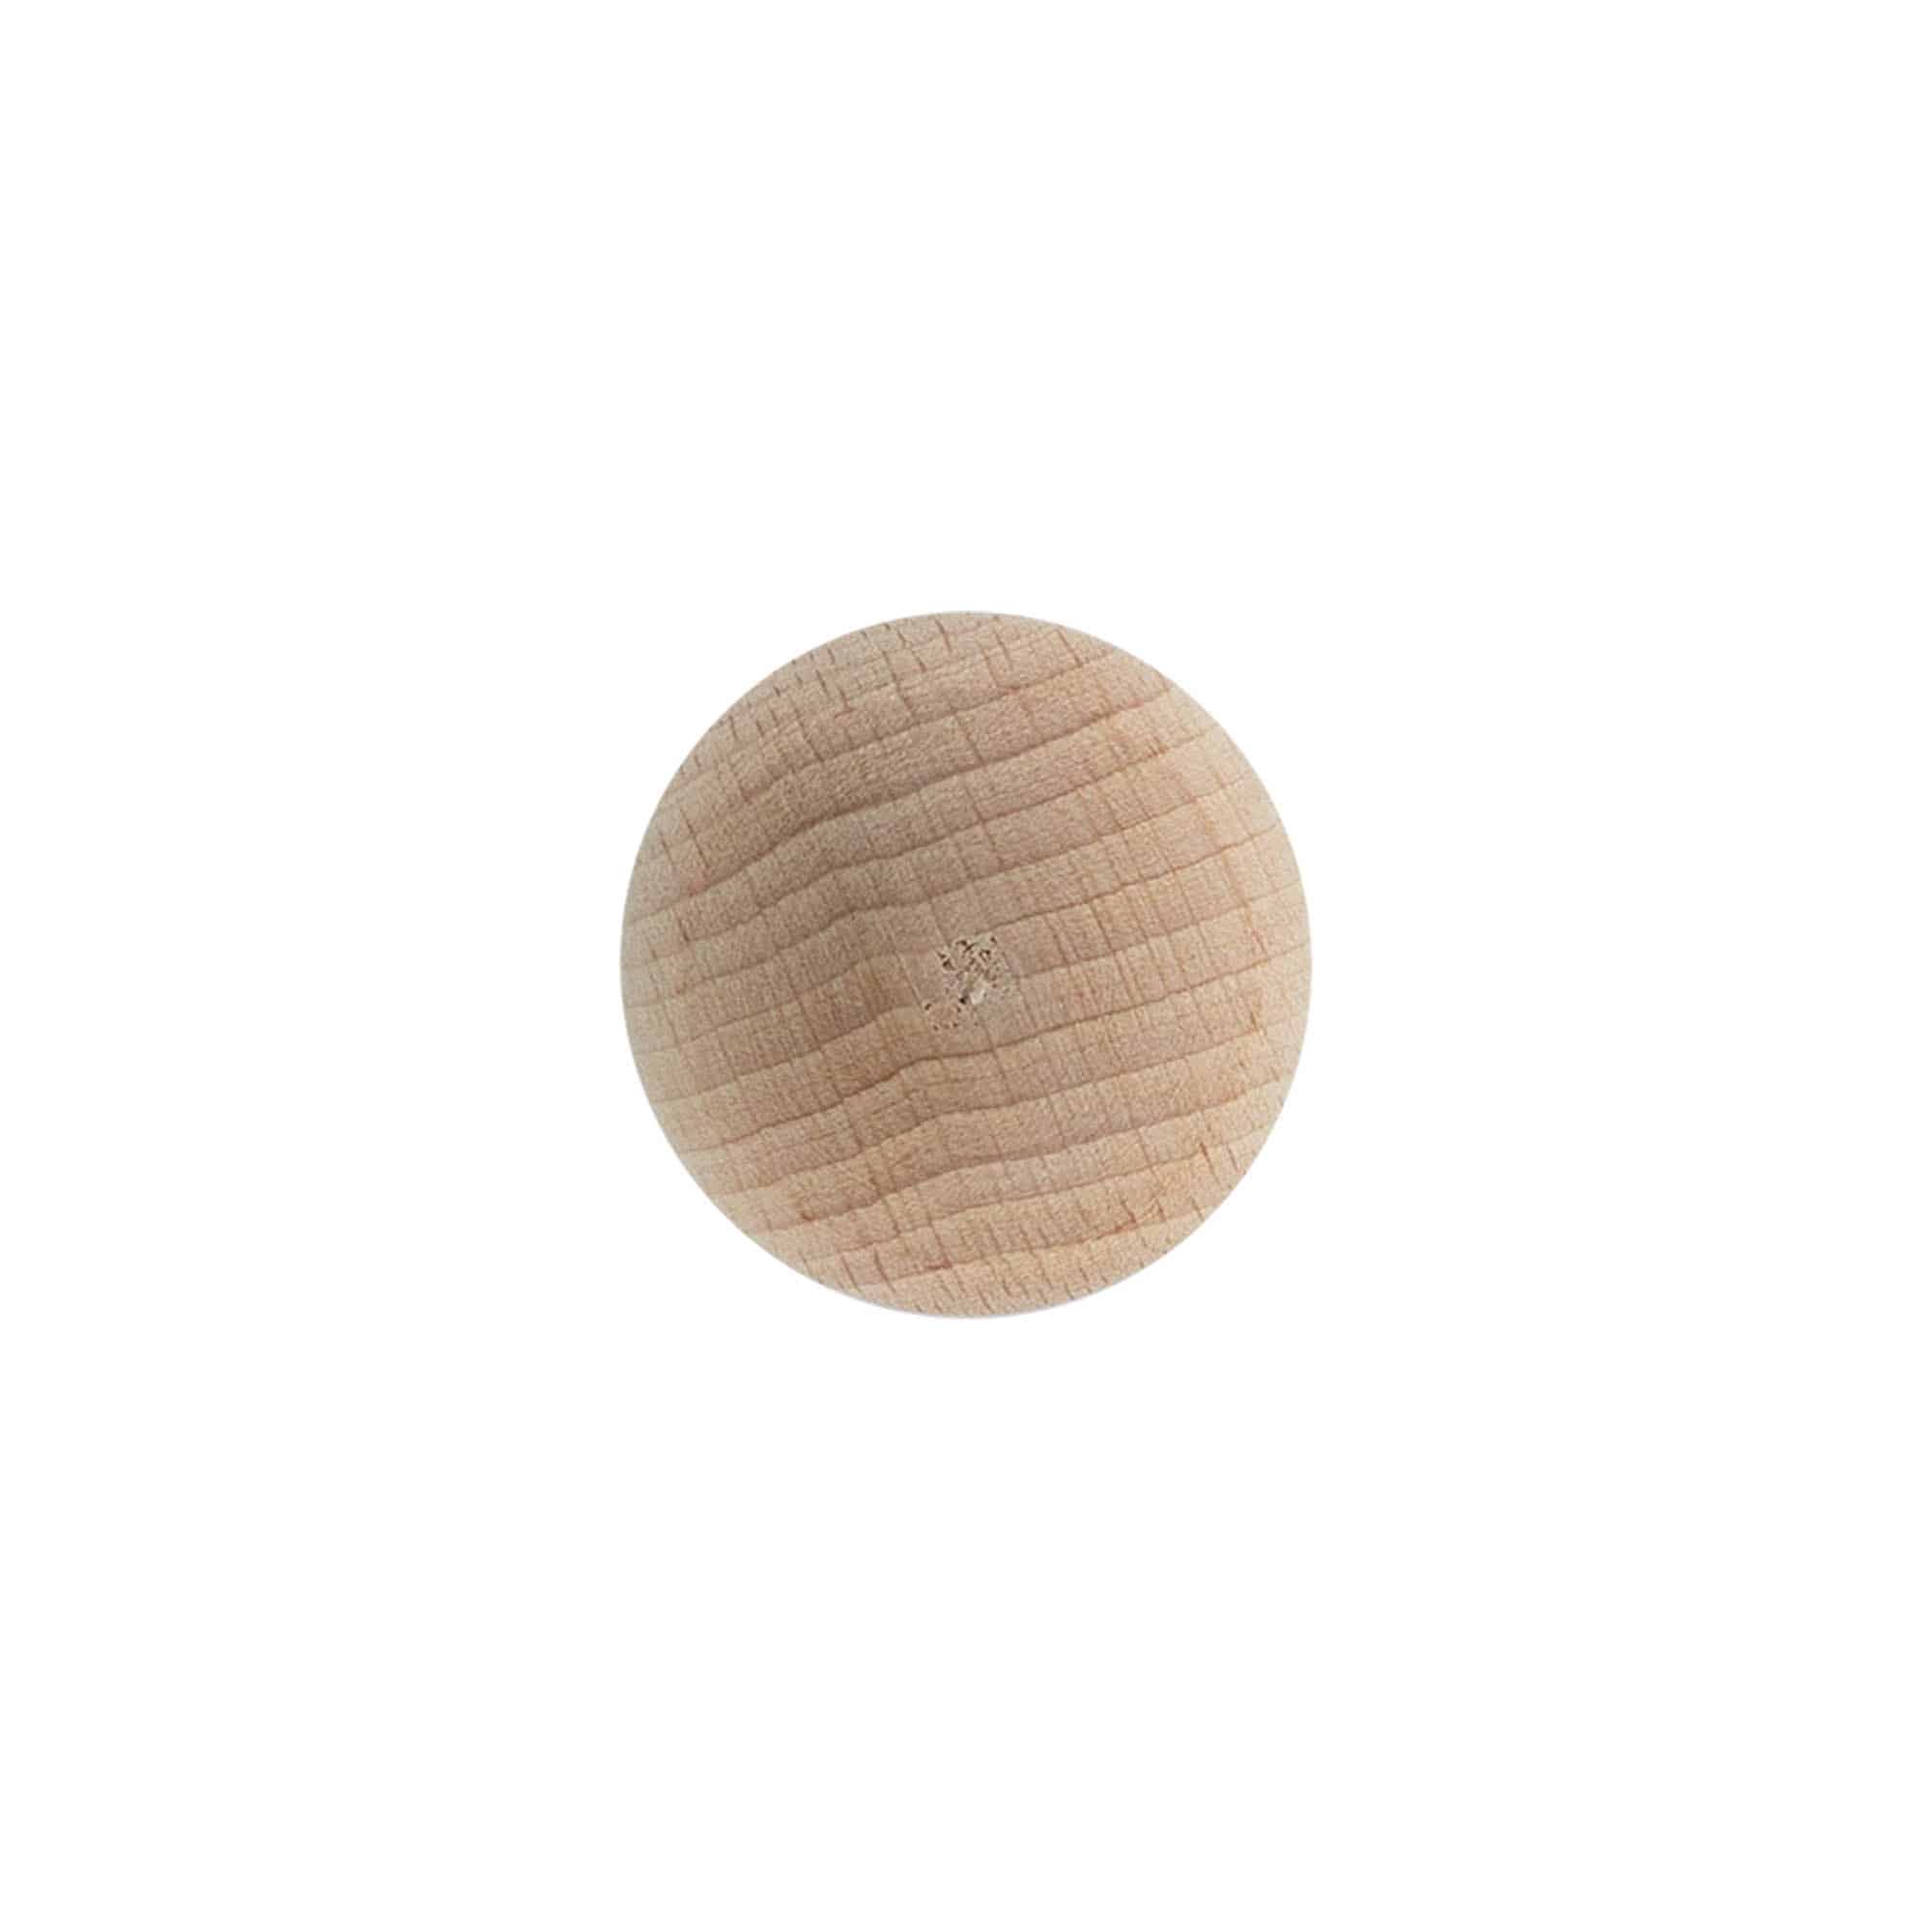 Dopkurk 'Bol', 19 mm, hout, voor monding: kurk